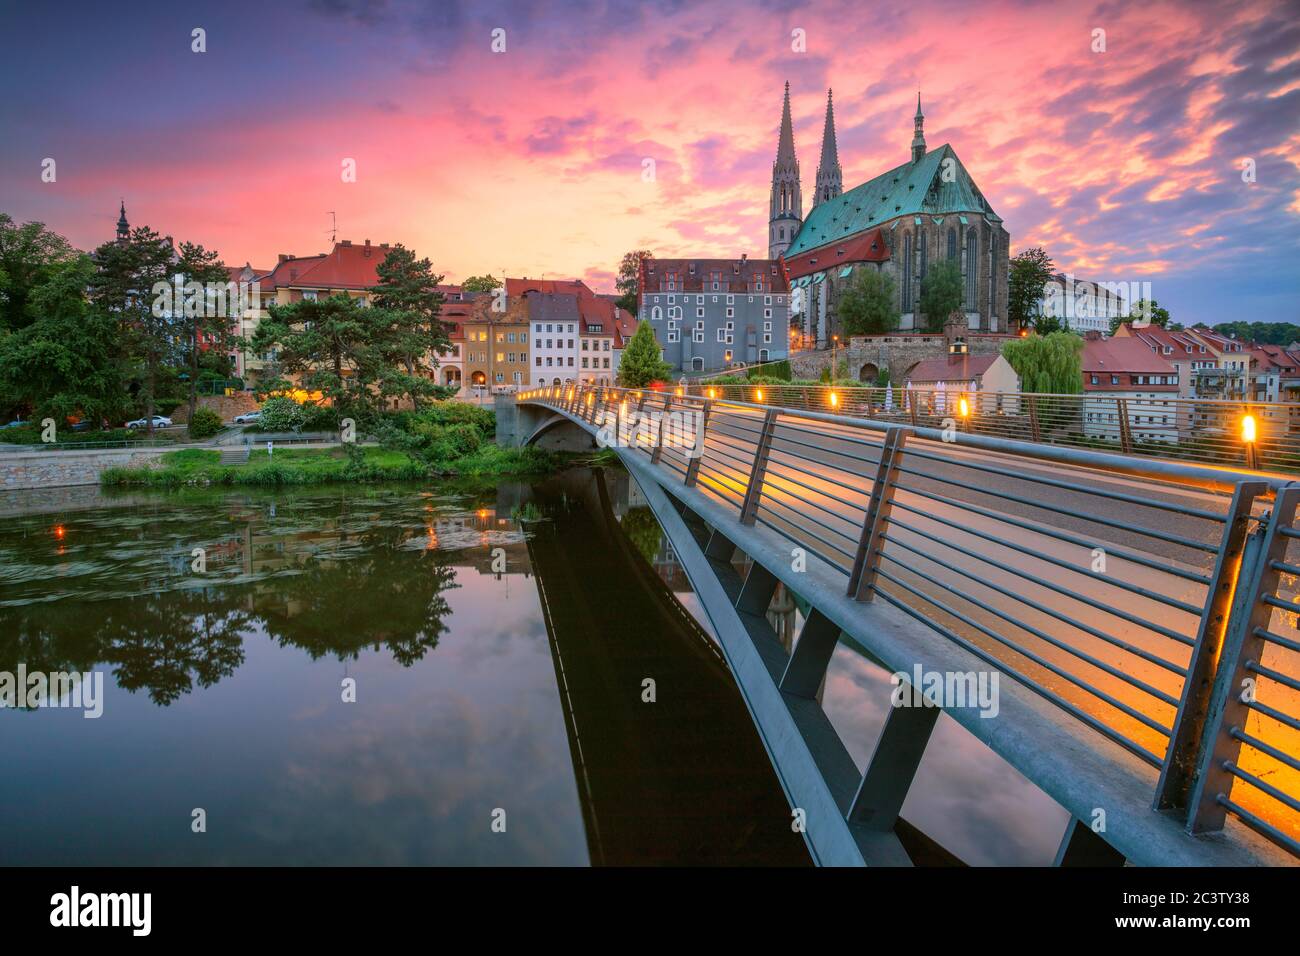 Gorlitz, Allemagne. Image de paysage urbain du centre-ville historique de Gorlitz, Allemagne, au coucher du soleil spectaculaire. Banque D'Images